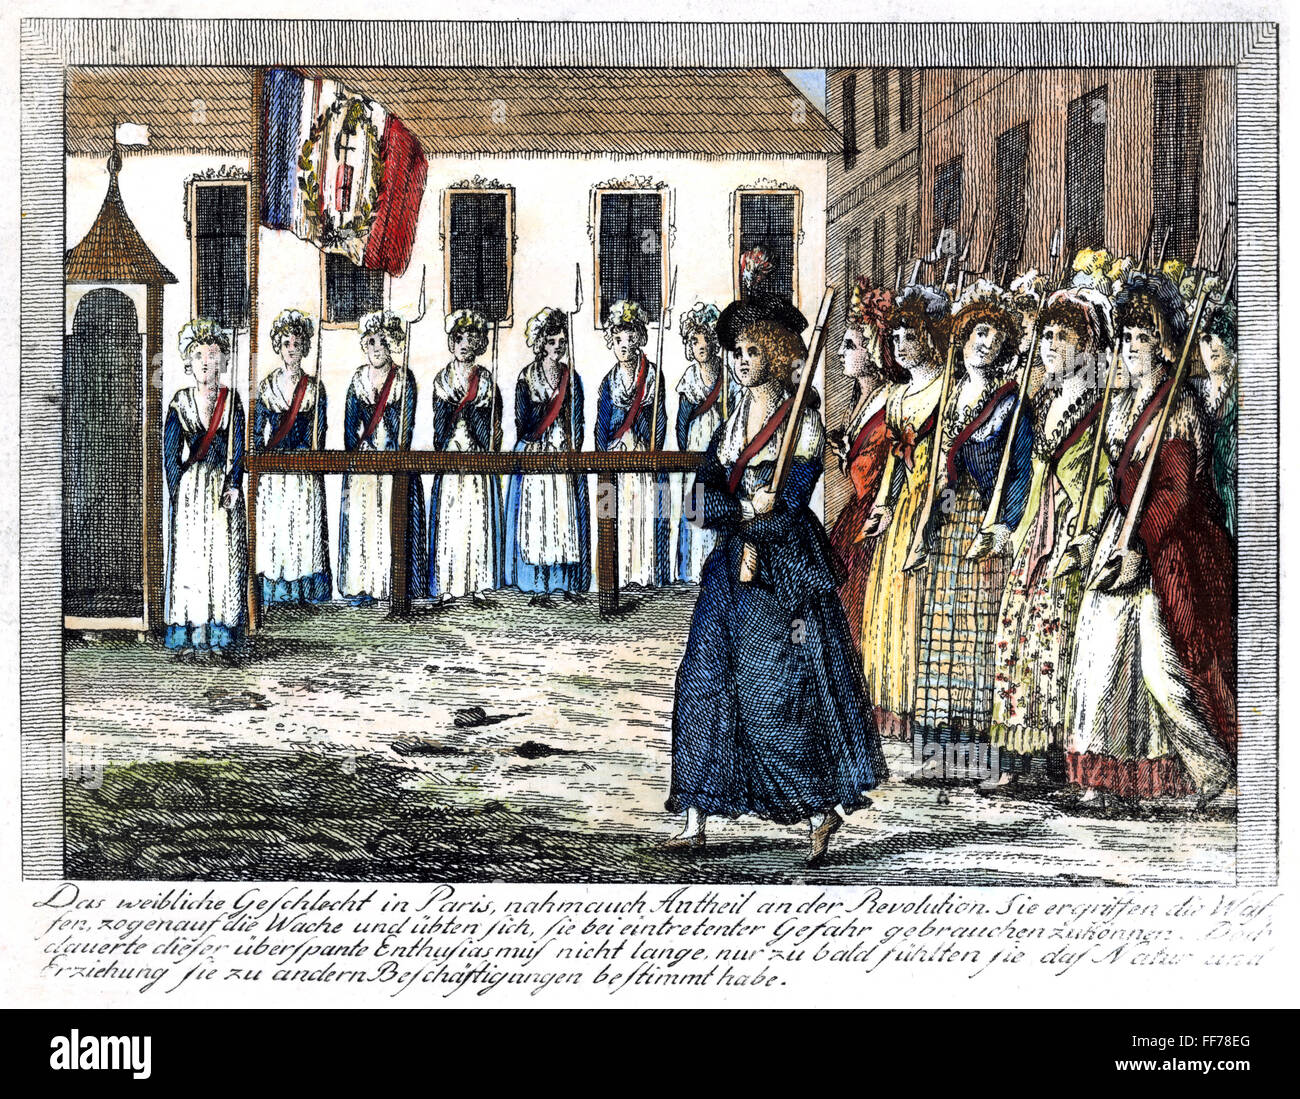 FRANZÖSISCHE REVOLUTION, 1789. /nRevolutionary Guardswomen von Paris, während die anfängliche Leidenschaft der Revolution. Zeitgenössische deutsche Linie Gravur. Stockfoto